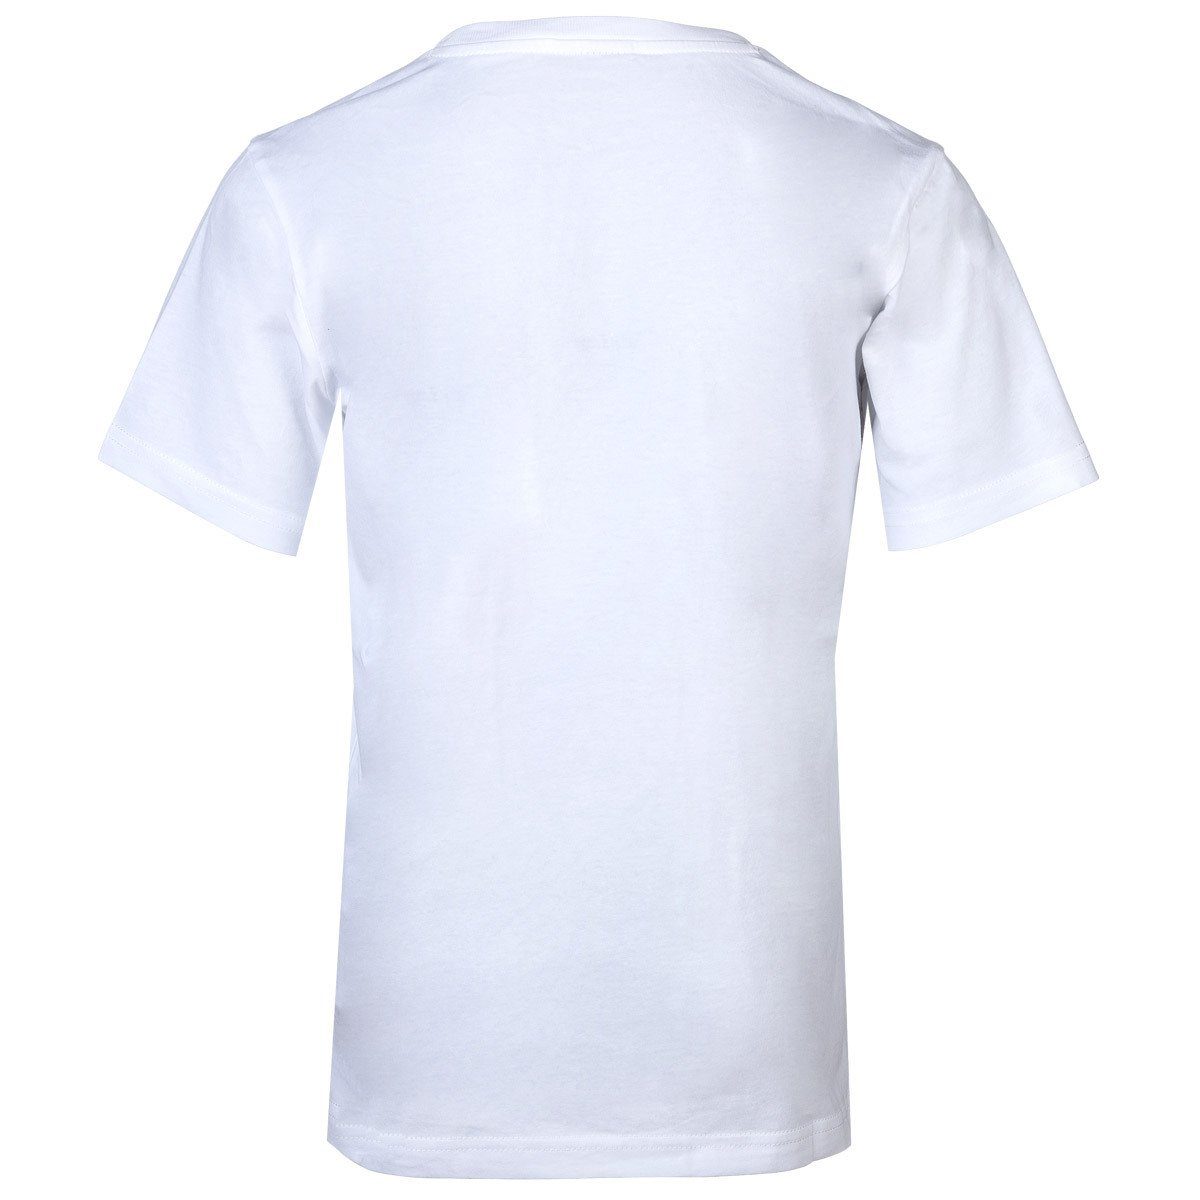 Champion Rundhals - Crewneck, Unisex T-Shirt Weiß T-Shirt Kinder